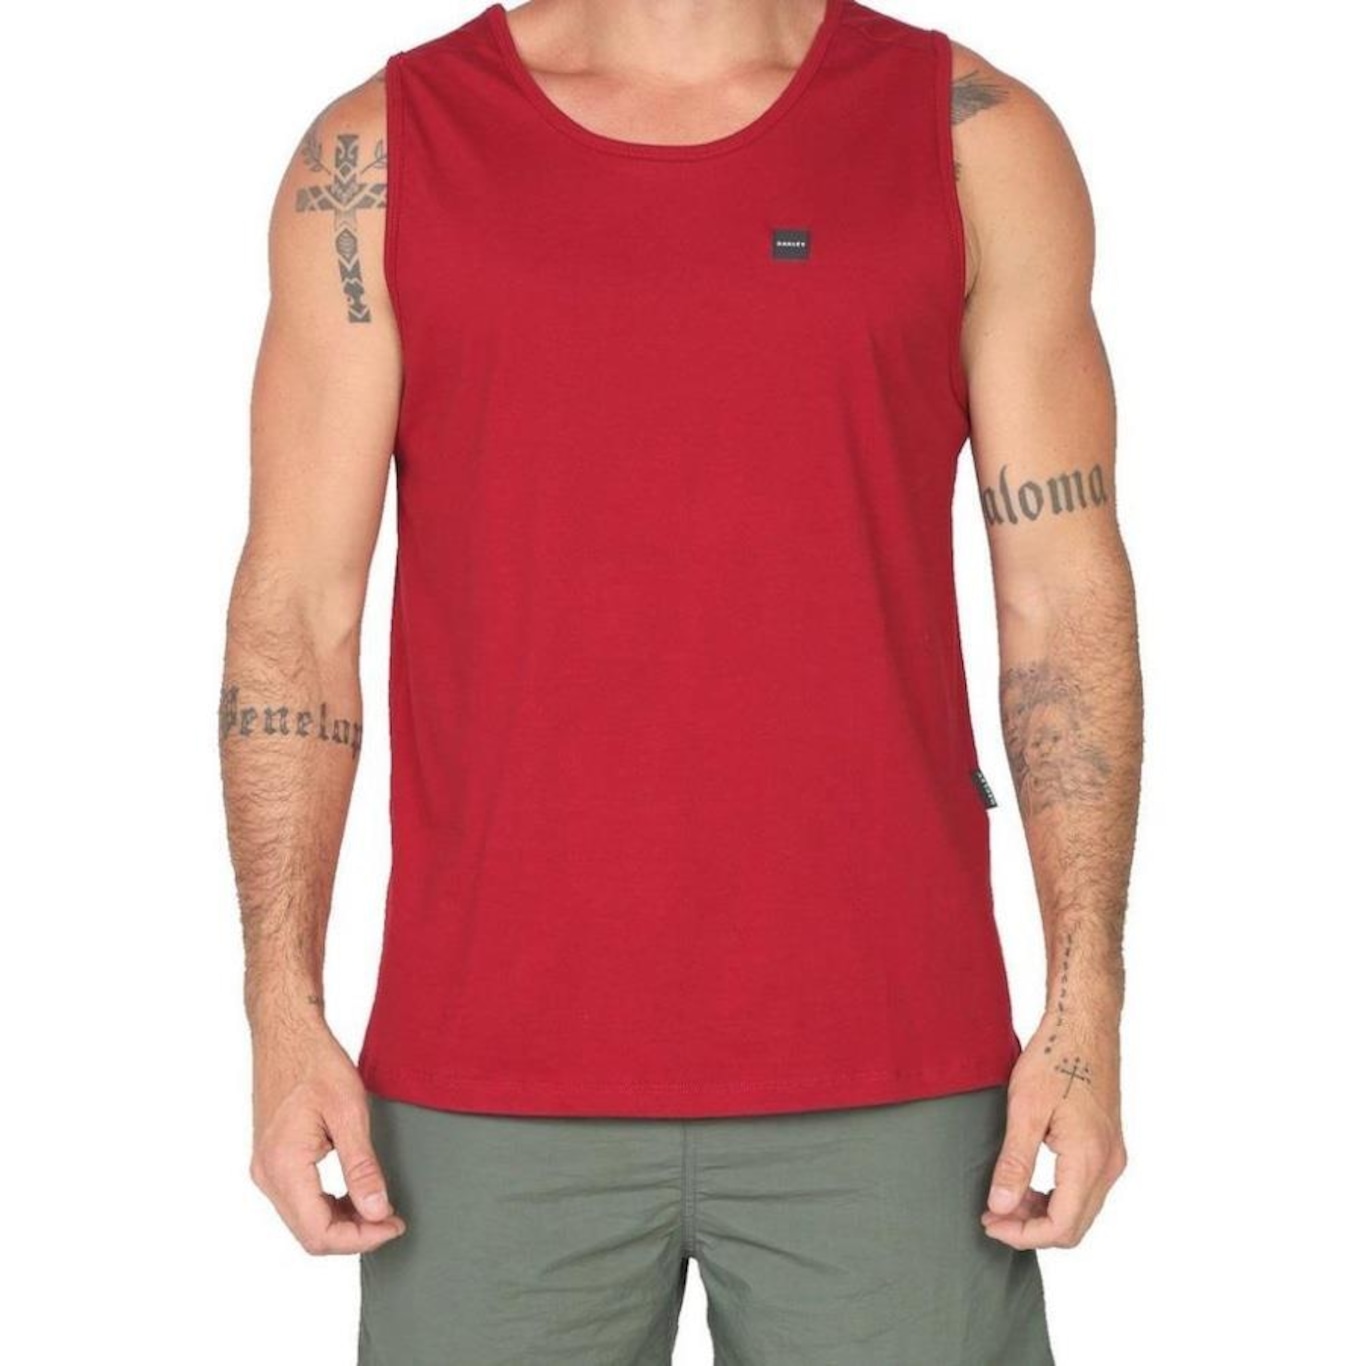 Camiseta Oakley Patch 20 Masculina Vermelho - Radical Place - Loja Virtual  de Produtos Esportivos